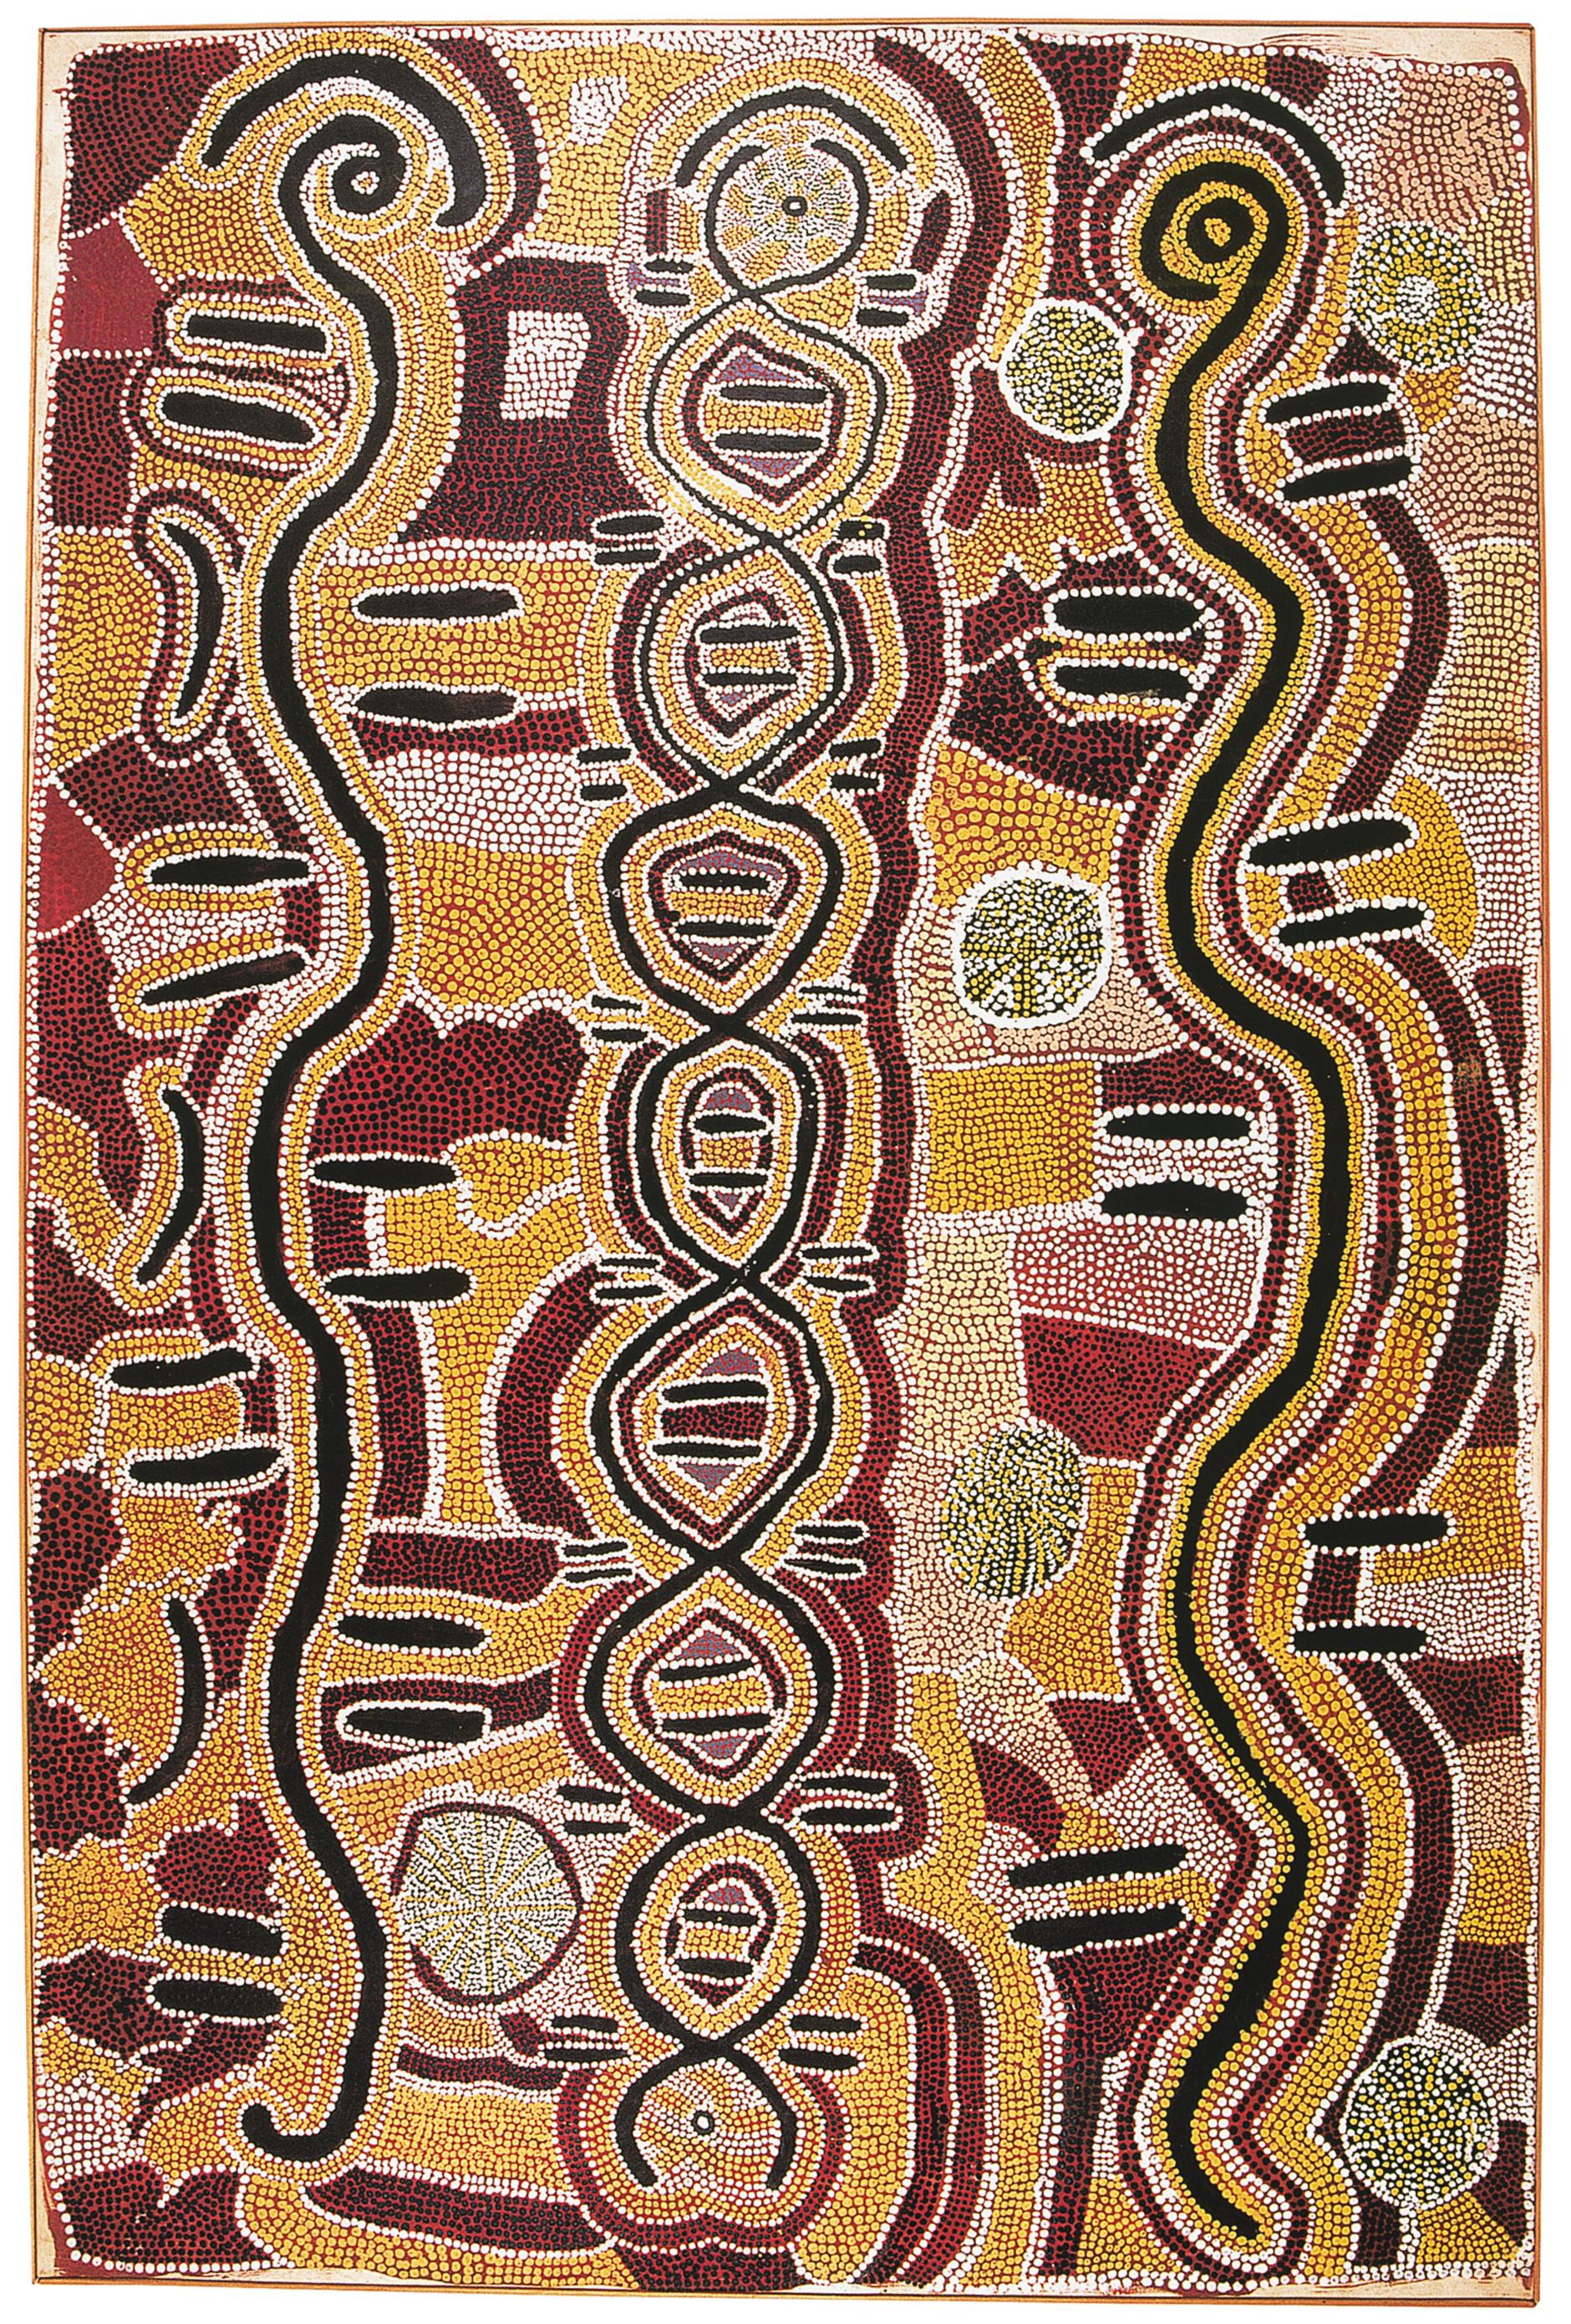 Paddy Gibson Japaljarri, (né vers 1925), Kurlungalinpa, 1988. Walpiri, Lajamanu, désert central. Acrylique sur toile, 128 x 85 cm. Collection B. Glowczweski.